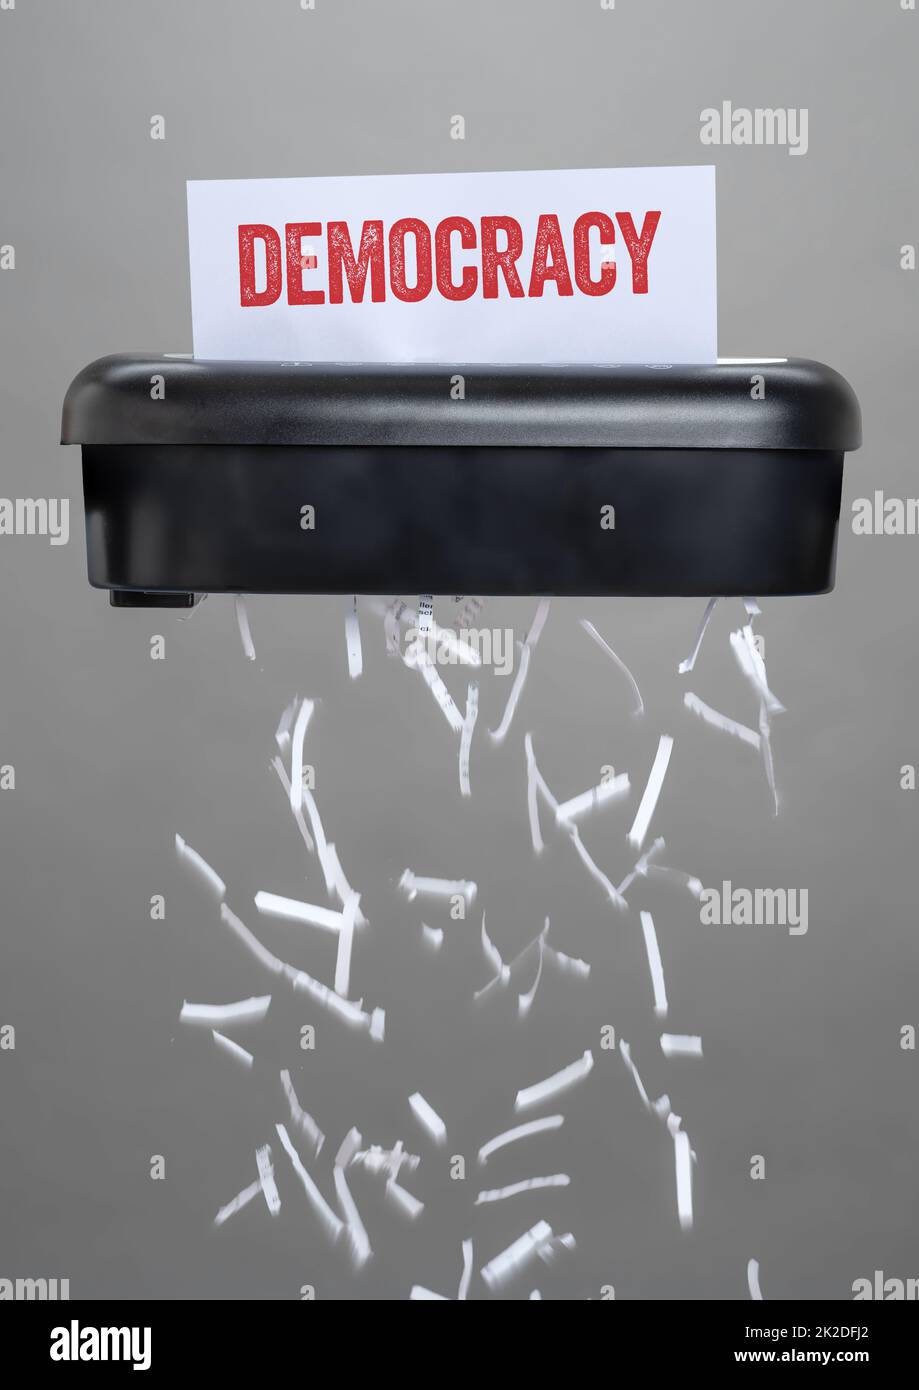 A shredder destroying a document - Democracy Stock Photo